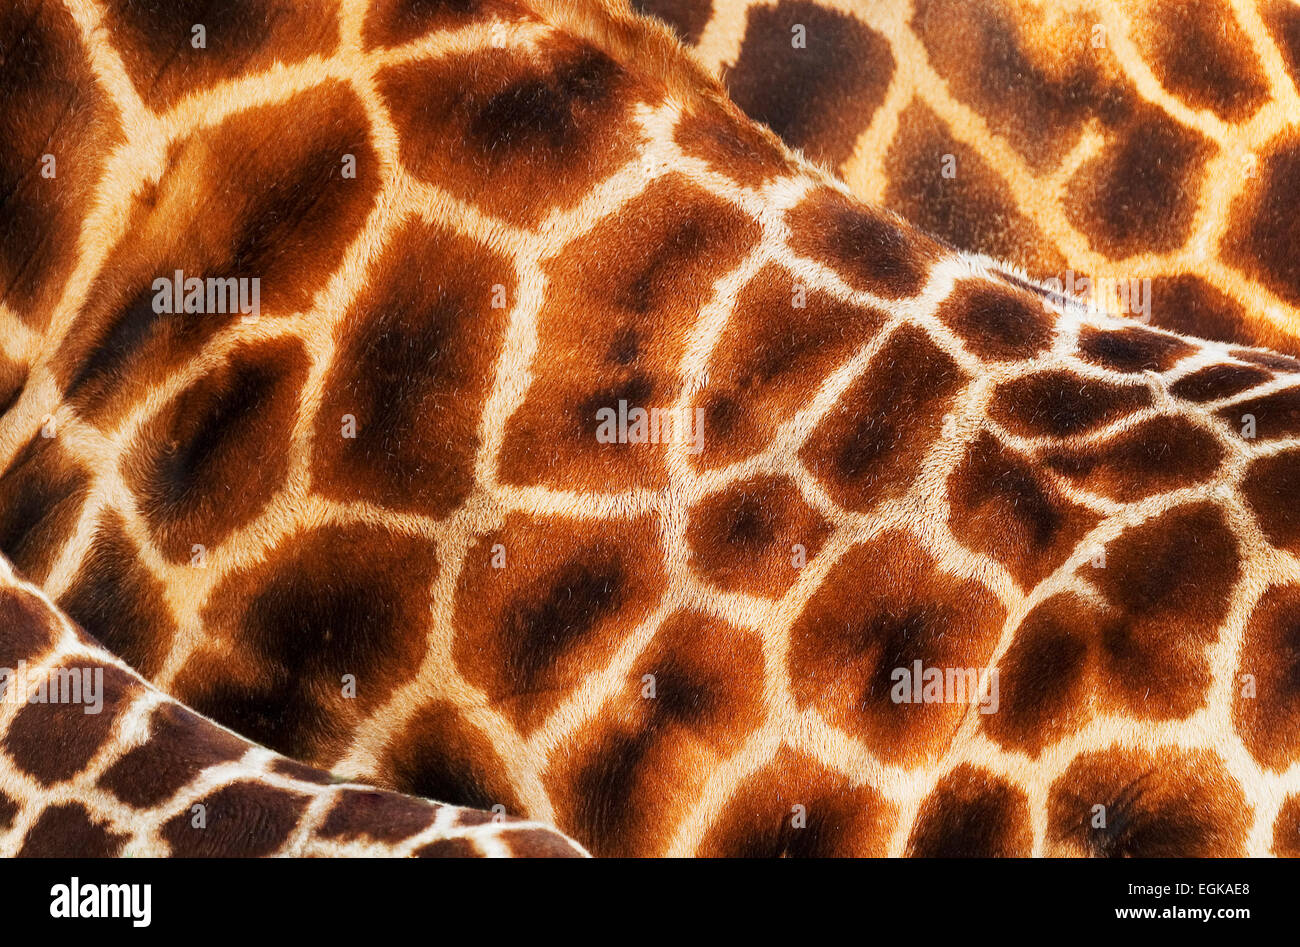 Modelli astratti di giraffe baringo prigioniere (Giraffa camelopardalis rothschildi) Foto Stock